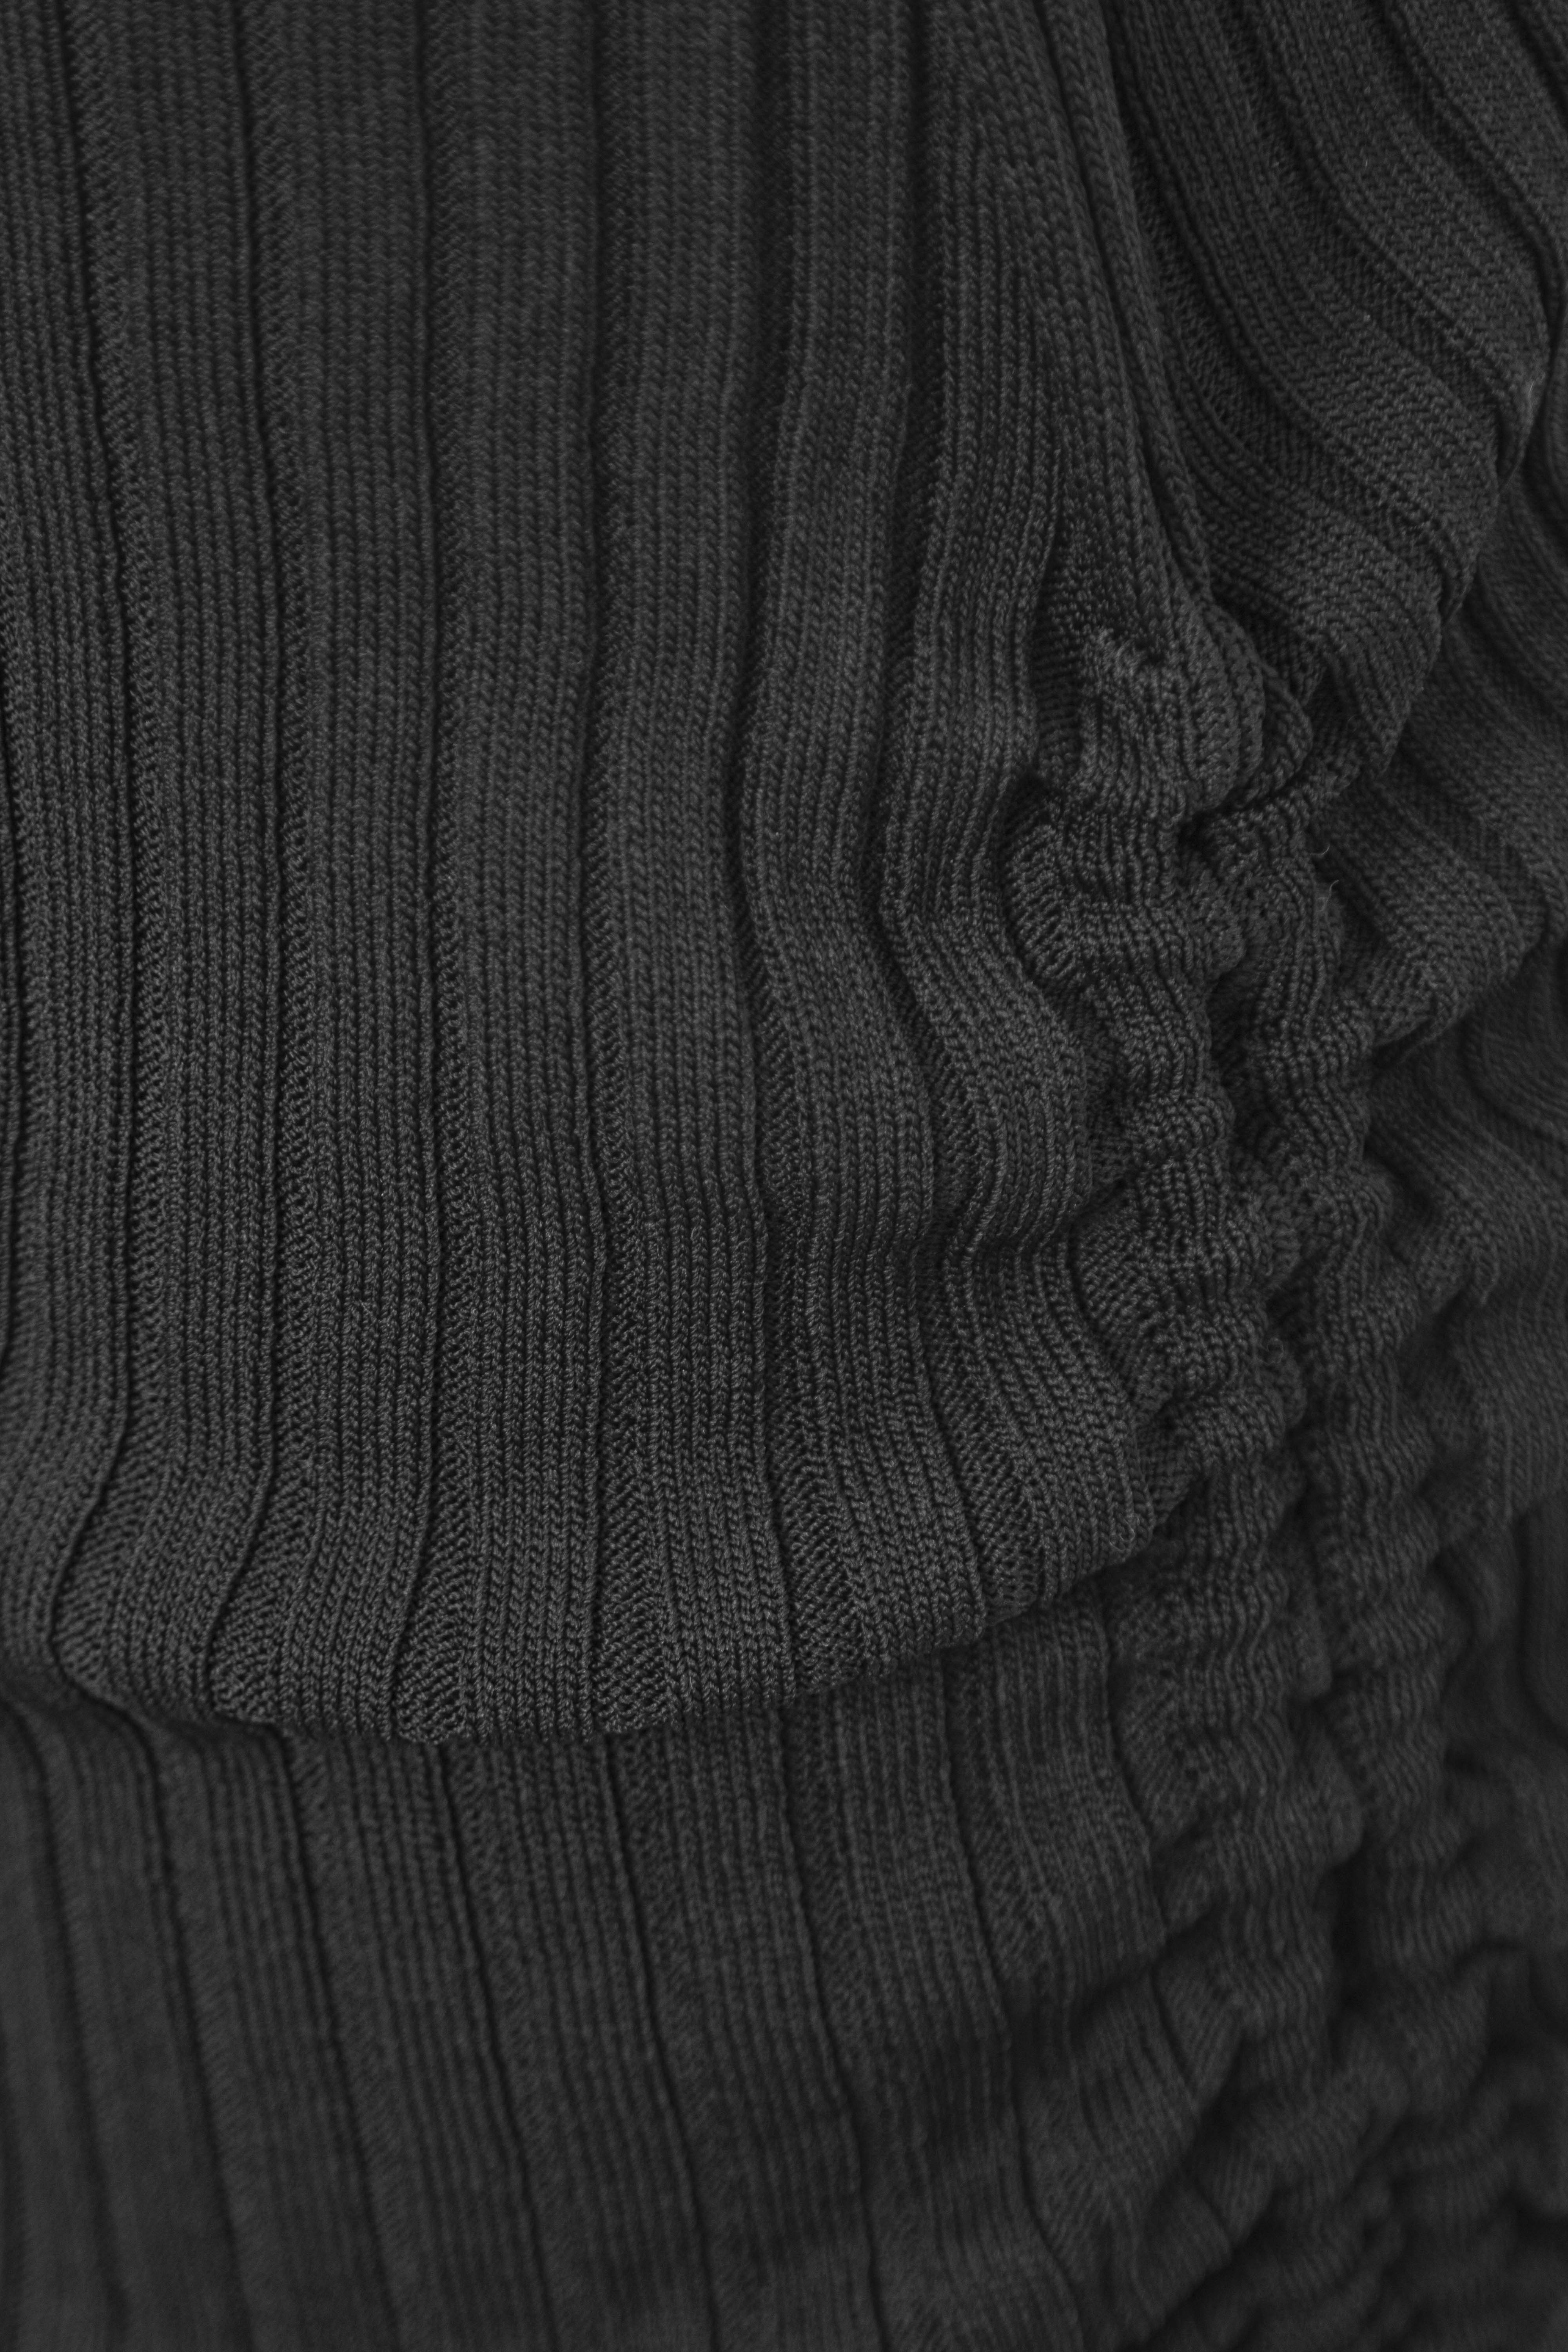 Skirt 3863-01 Black from BRUSNiKA